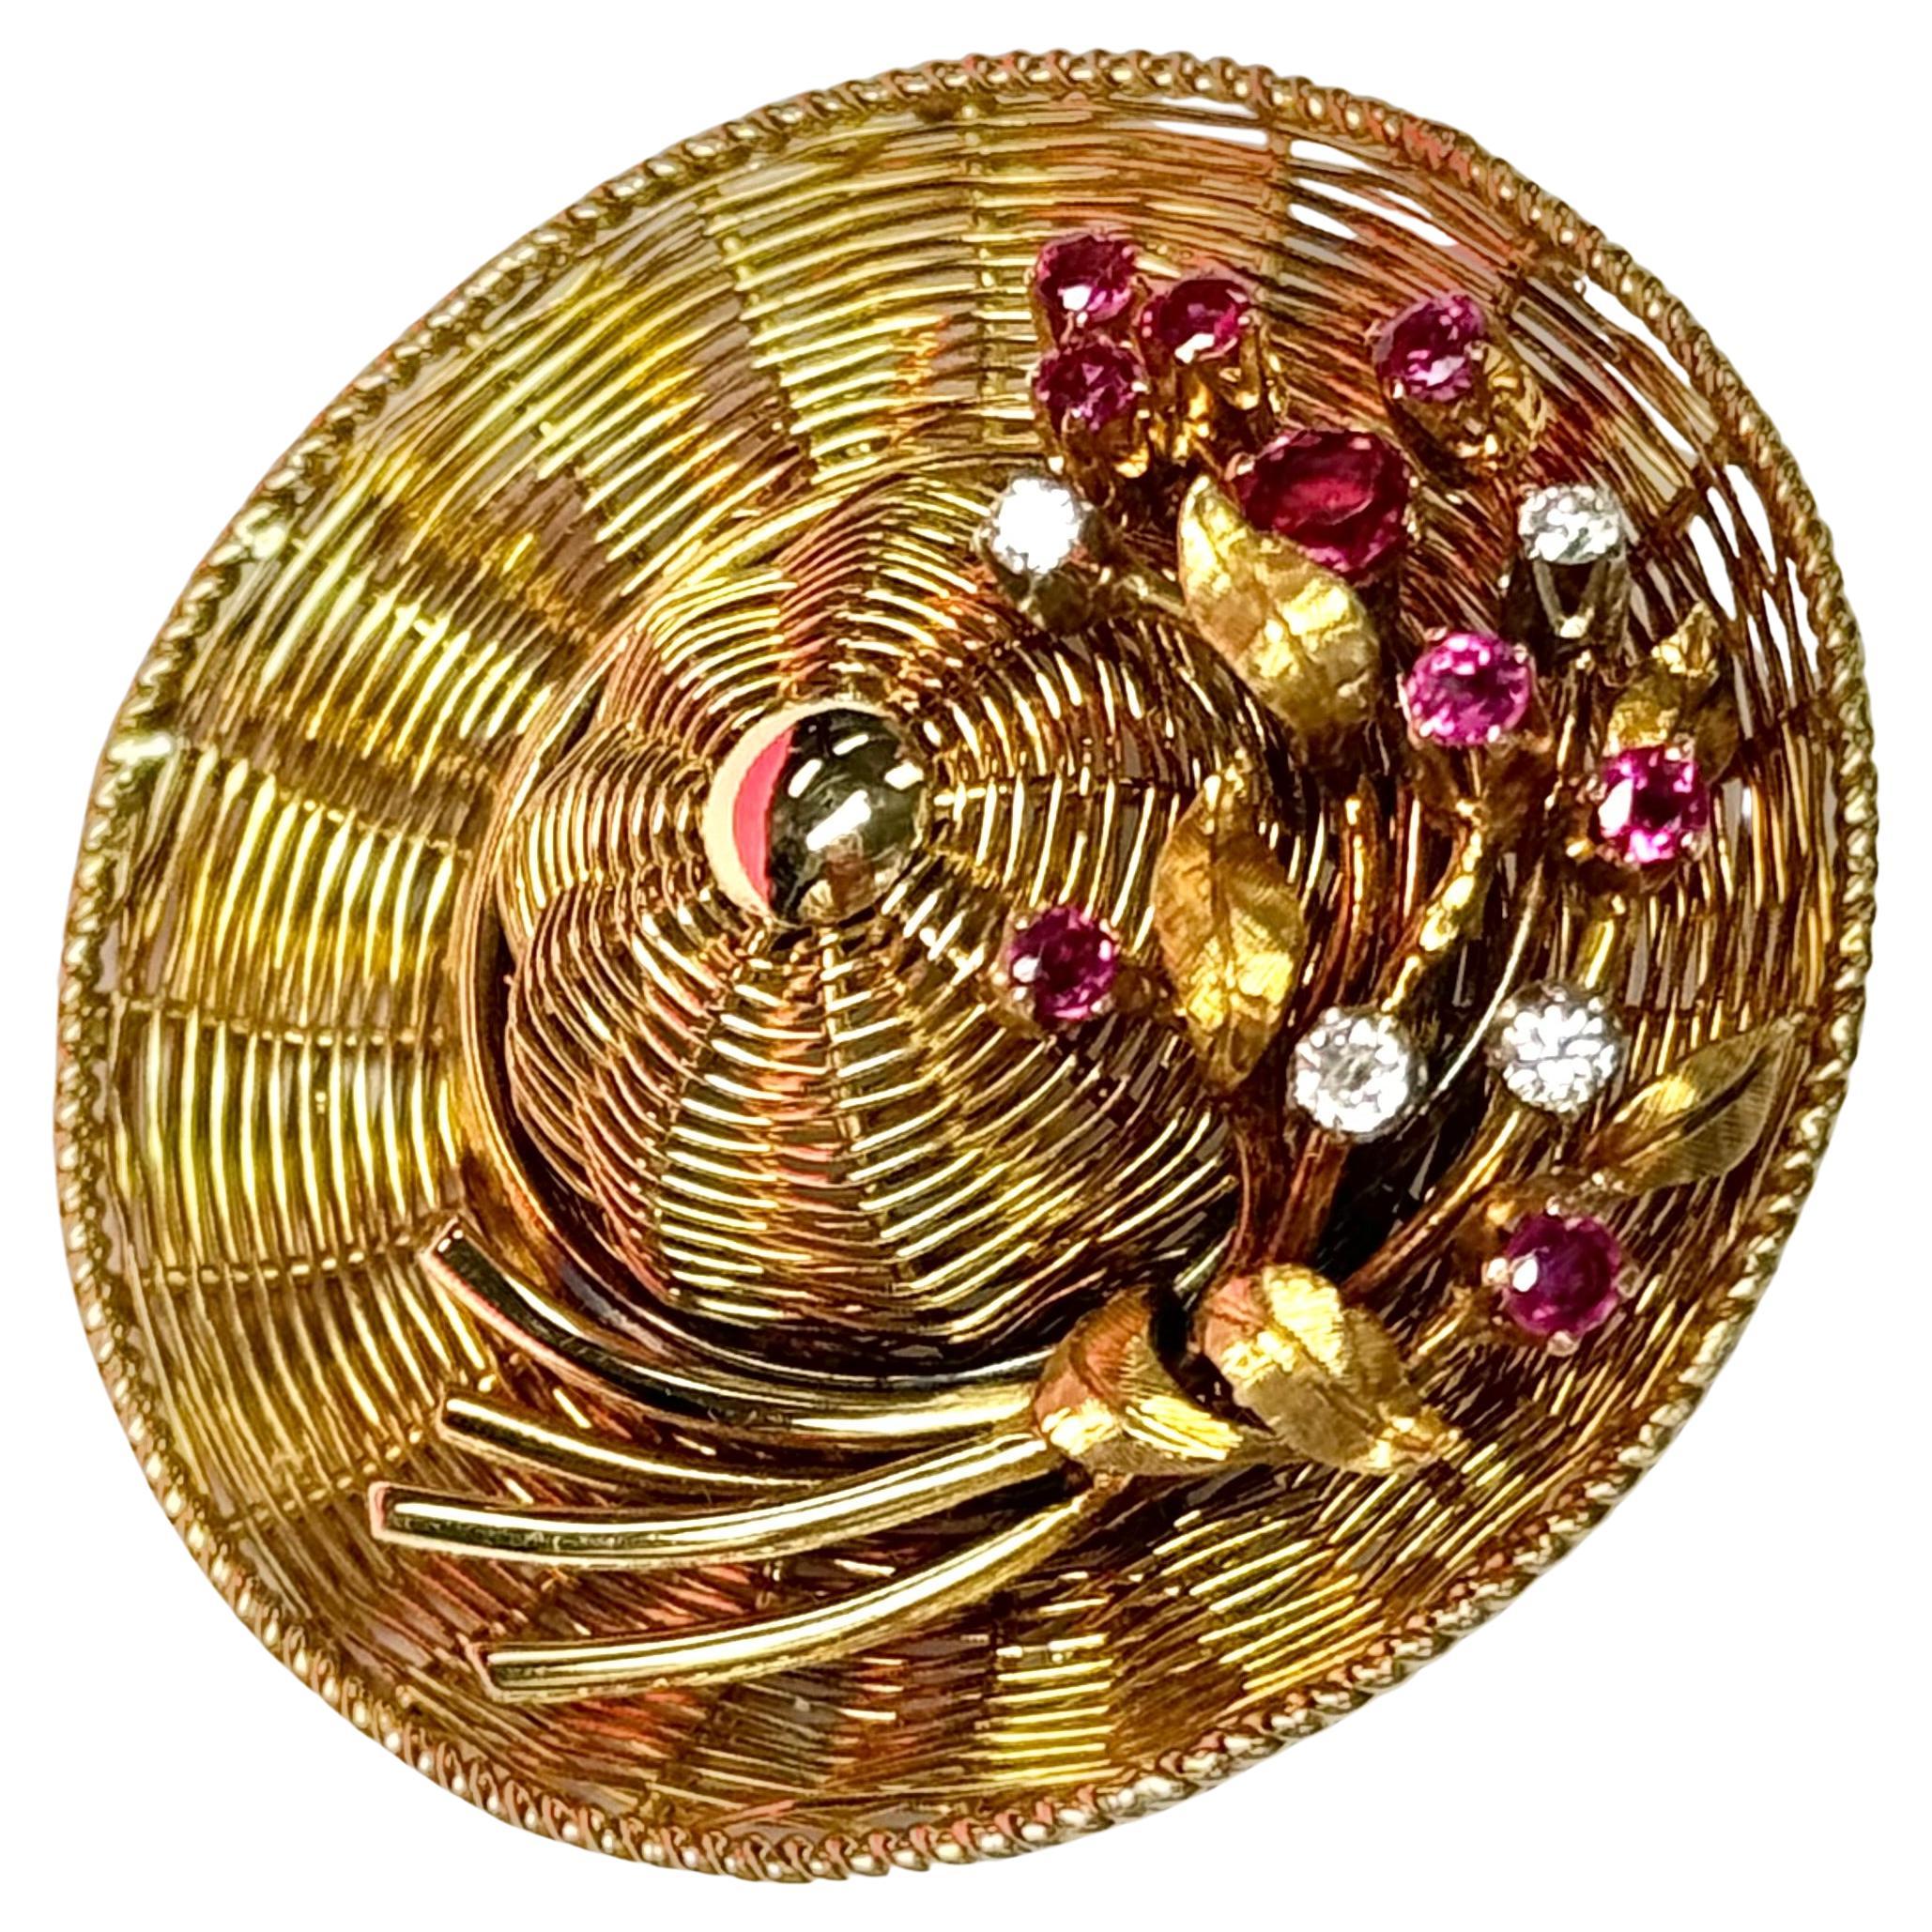 Seltene, antike Brosche von Tiffany & Co. aus 18 Karat Gelbgold mit Diamant- und Rubin-Akzenten. Das exquisite, skurrile Hutdesign ist meisterhaft in einem reichhaltigen goldenen Flechtmuster gefertigt und zart mit diamantenen und rubinroten Blüten